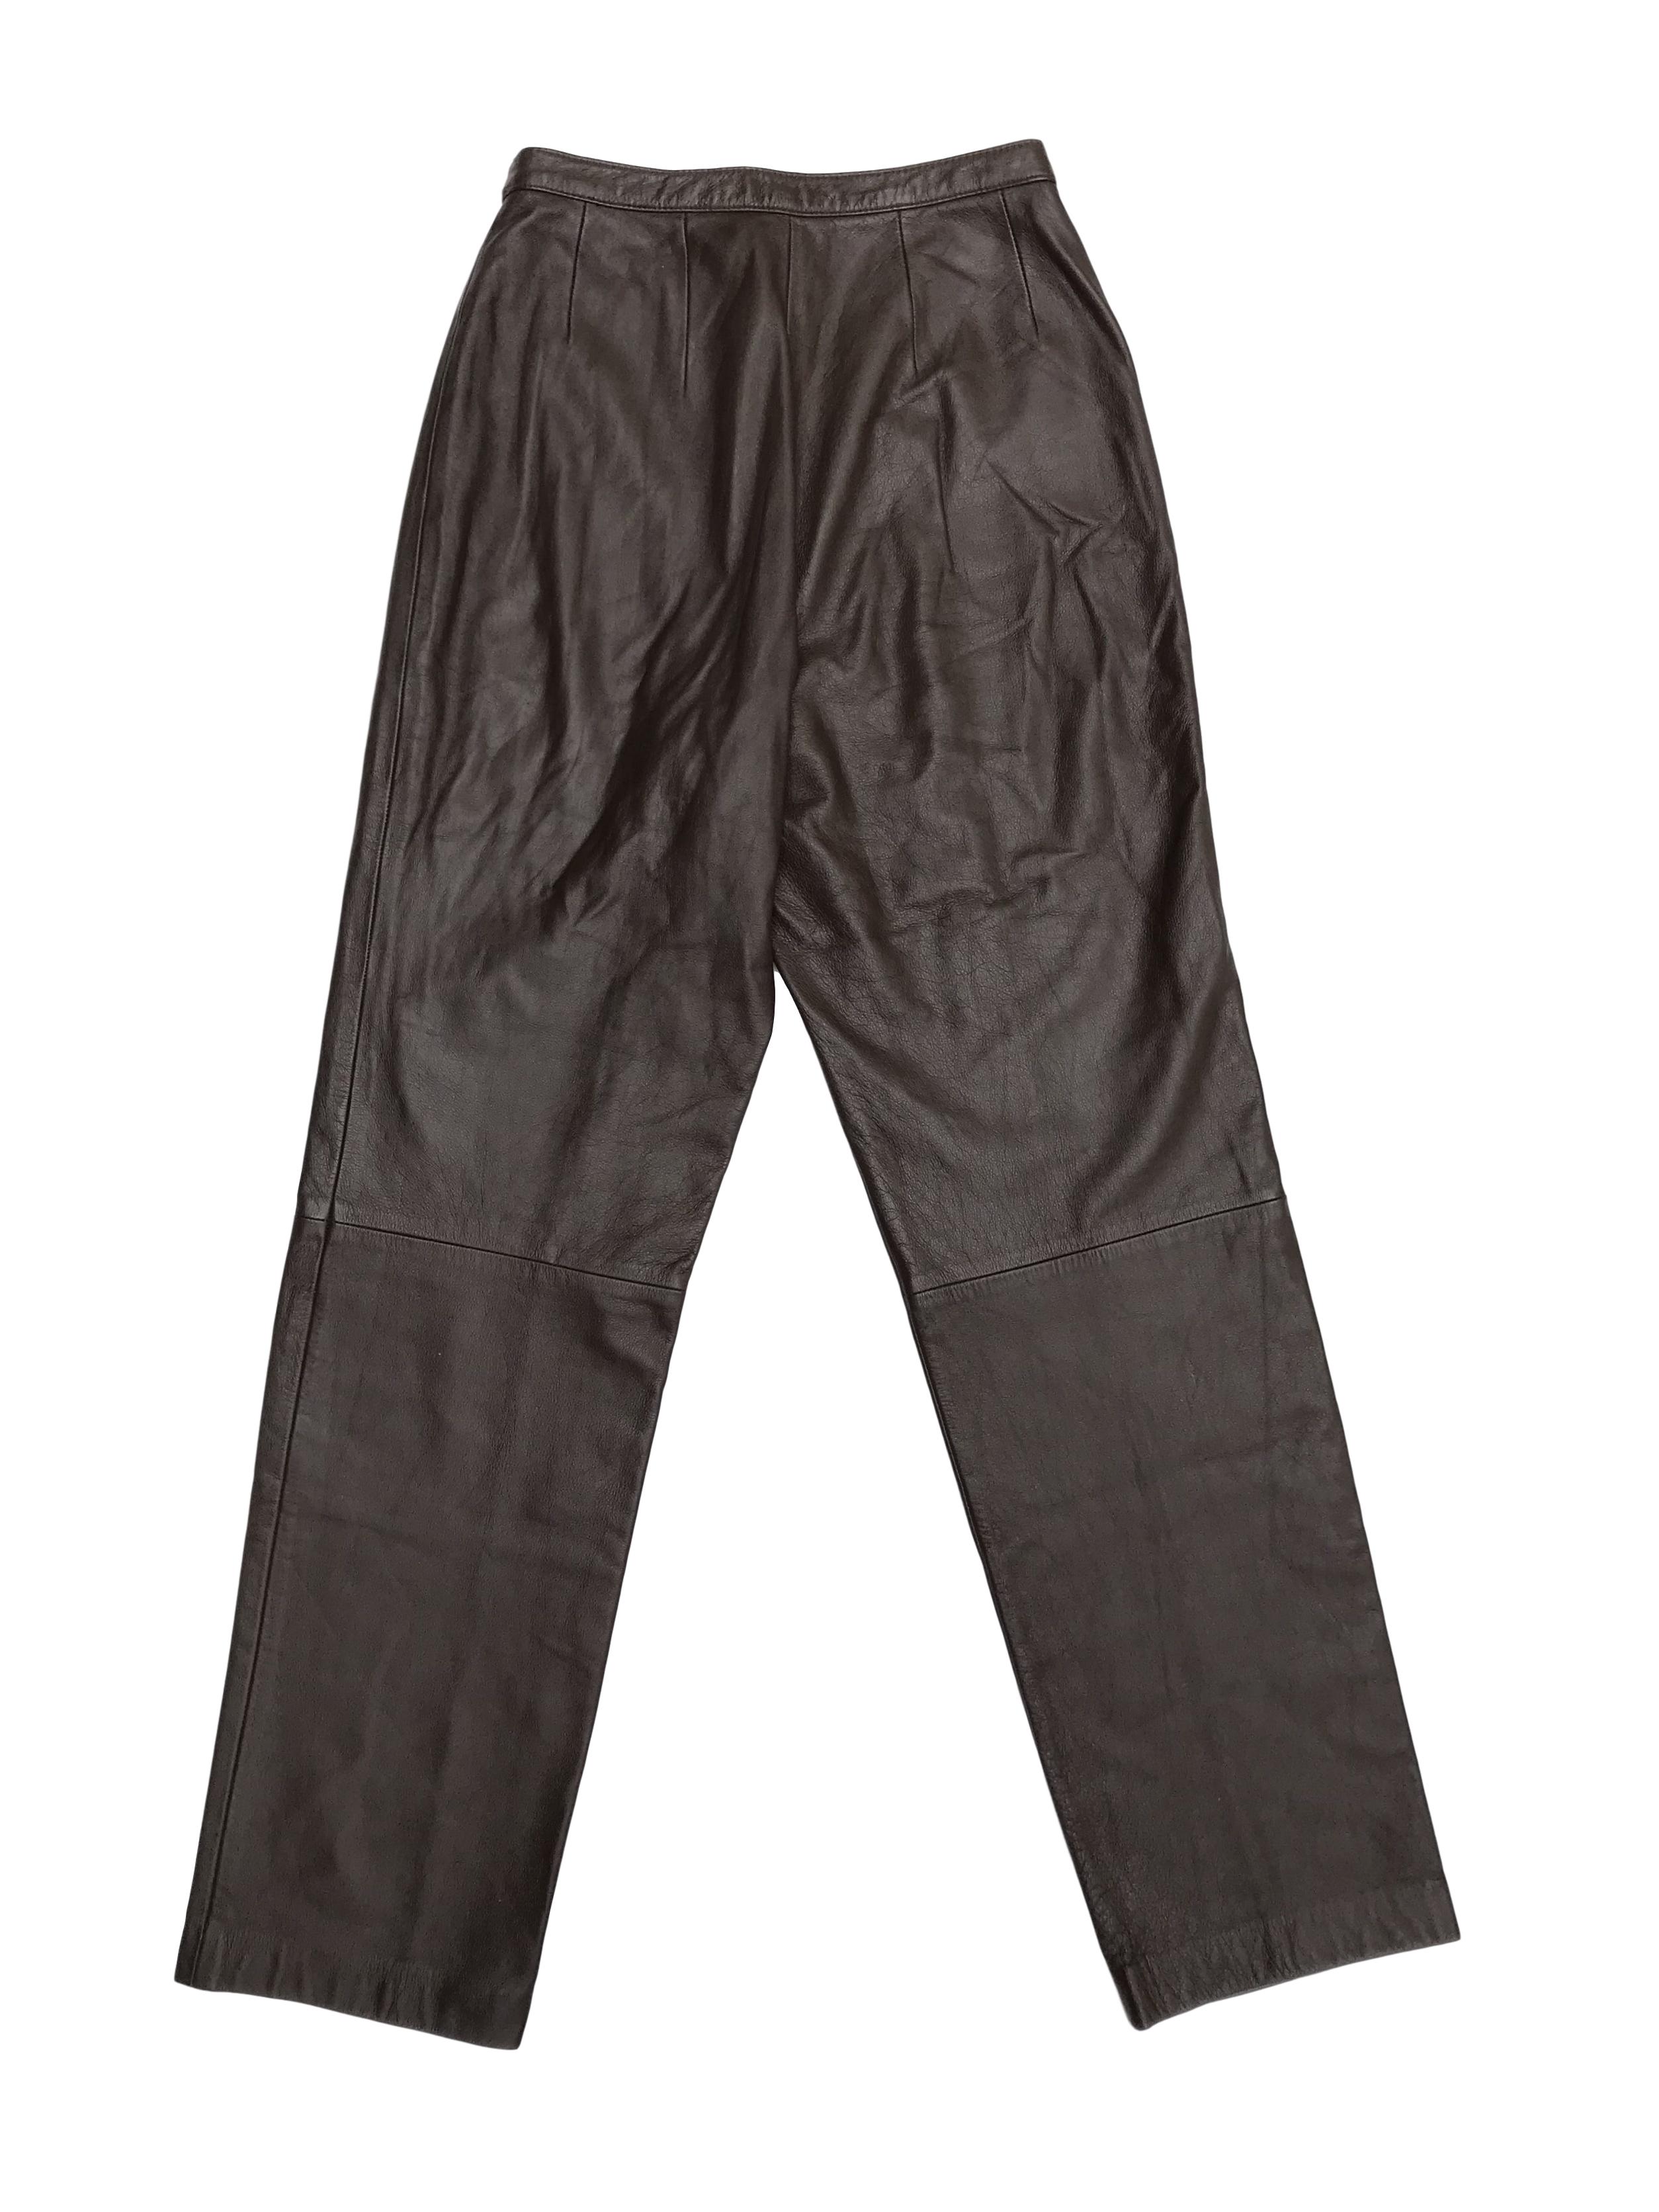 Pantalón de cuero marrón a la cintura, tiene botón y cierre delanteros, corte recto, lleva forro hasta la rodilla. Cintura 67cm Largo 105cm. Precio retail S/ 450